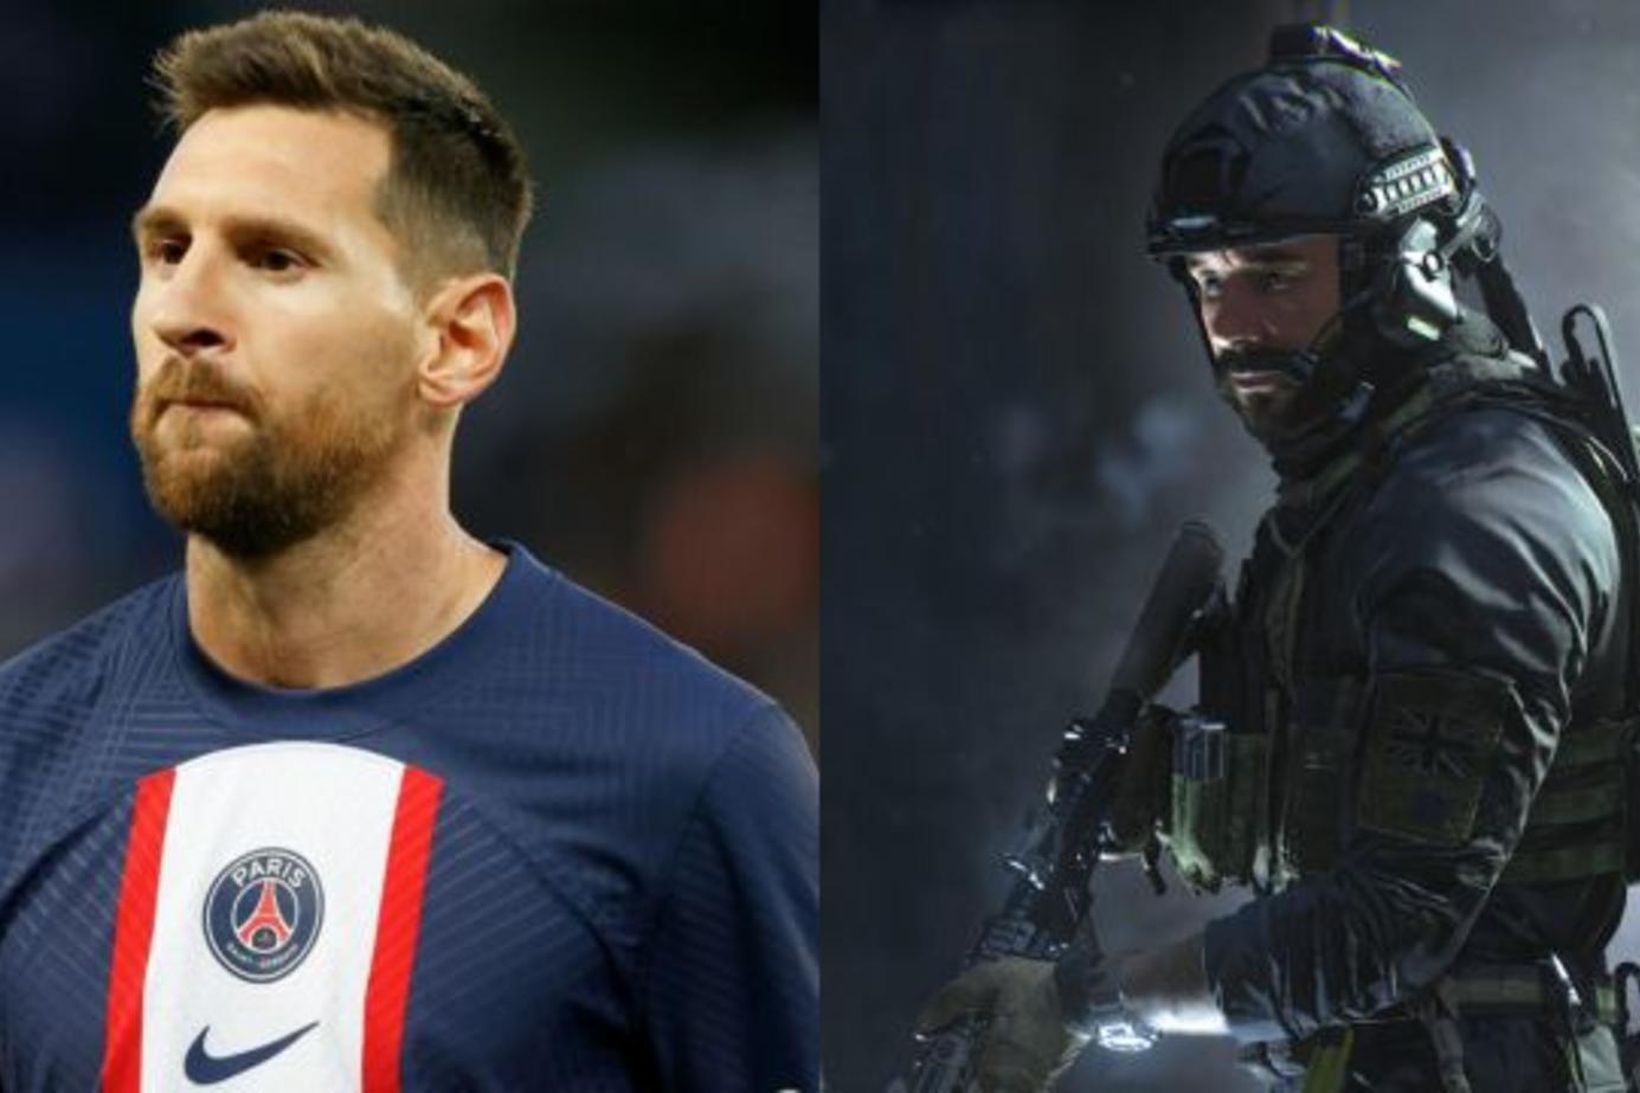 Lionel Messi kemur sem viðbót í Modern Warfare 2.